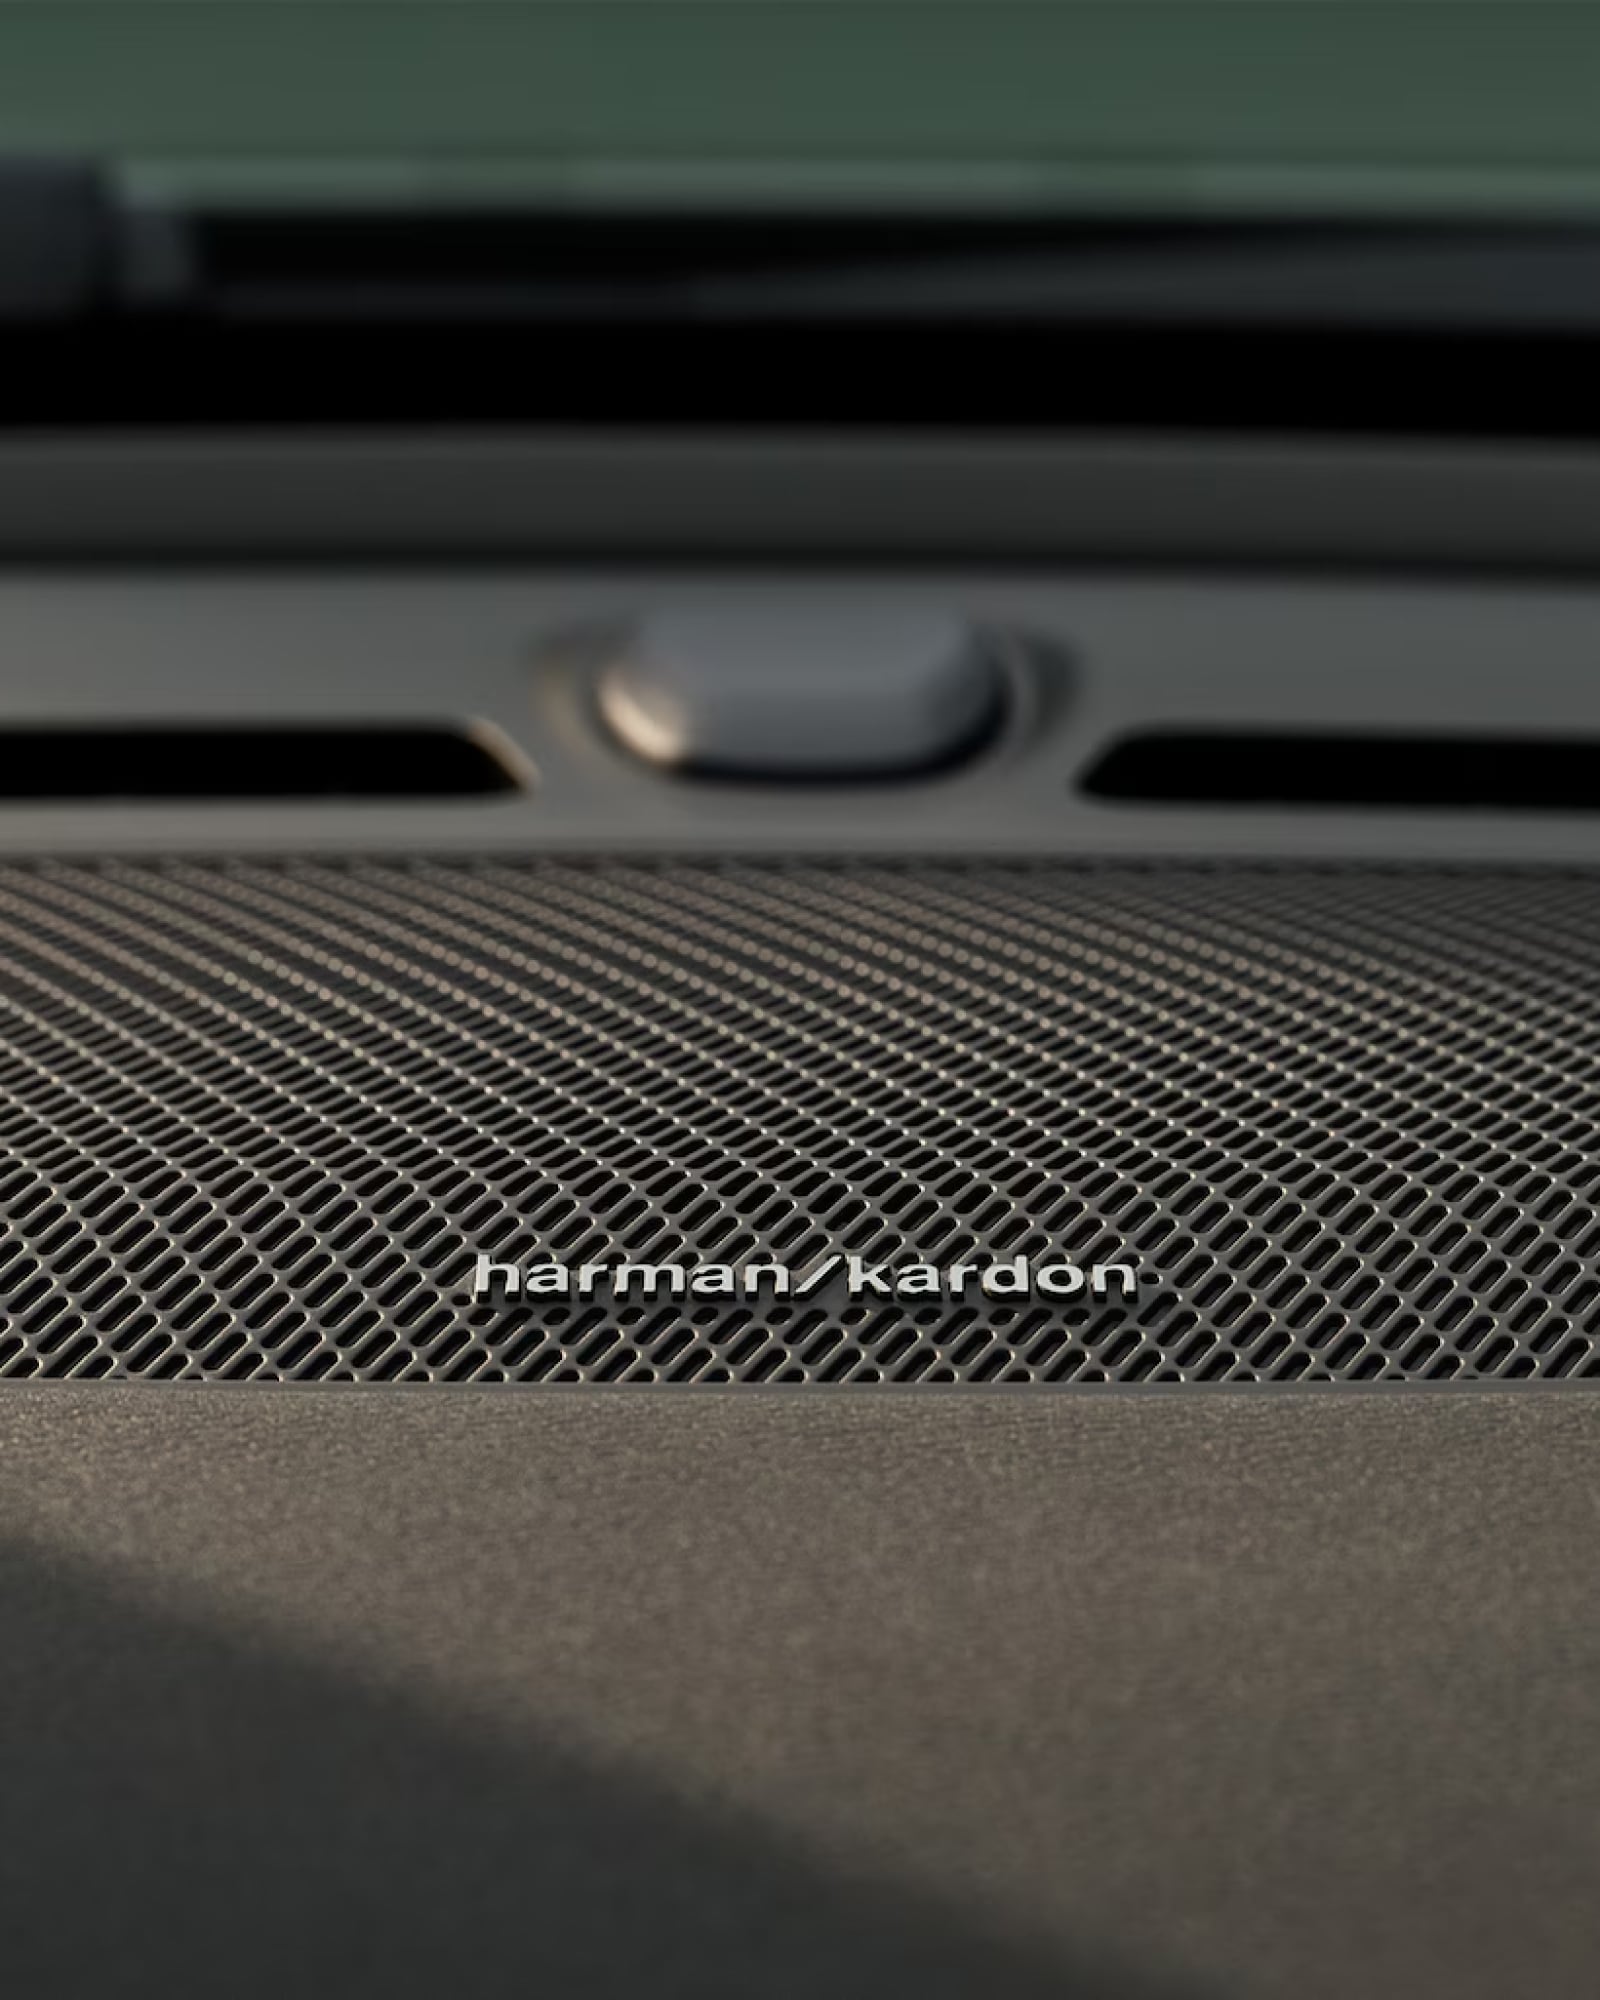 Immagine dettagliata dell'altoparlante Harman Kardon in una Volvo XC40.